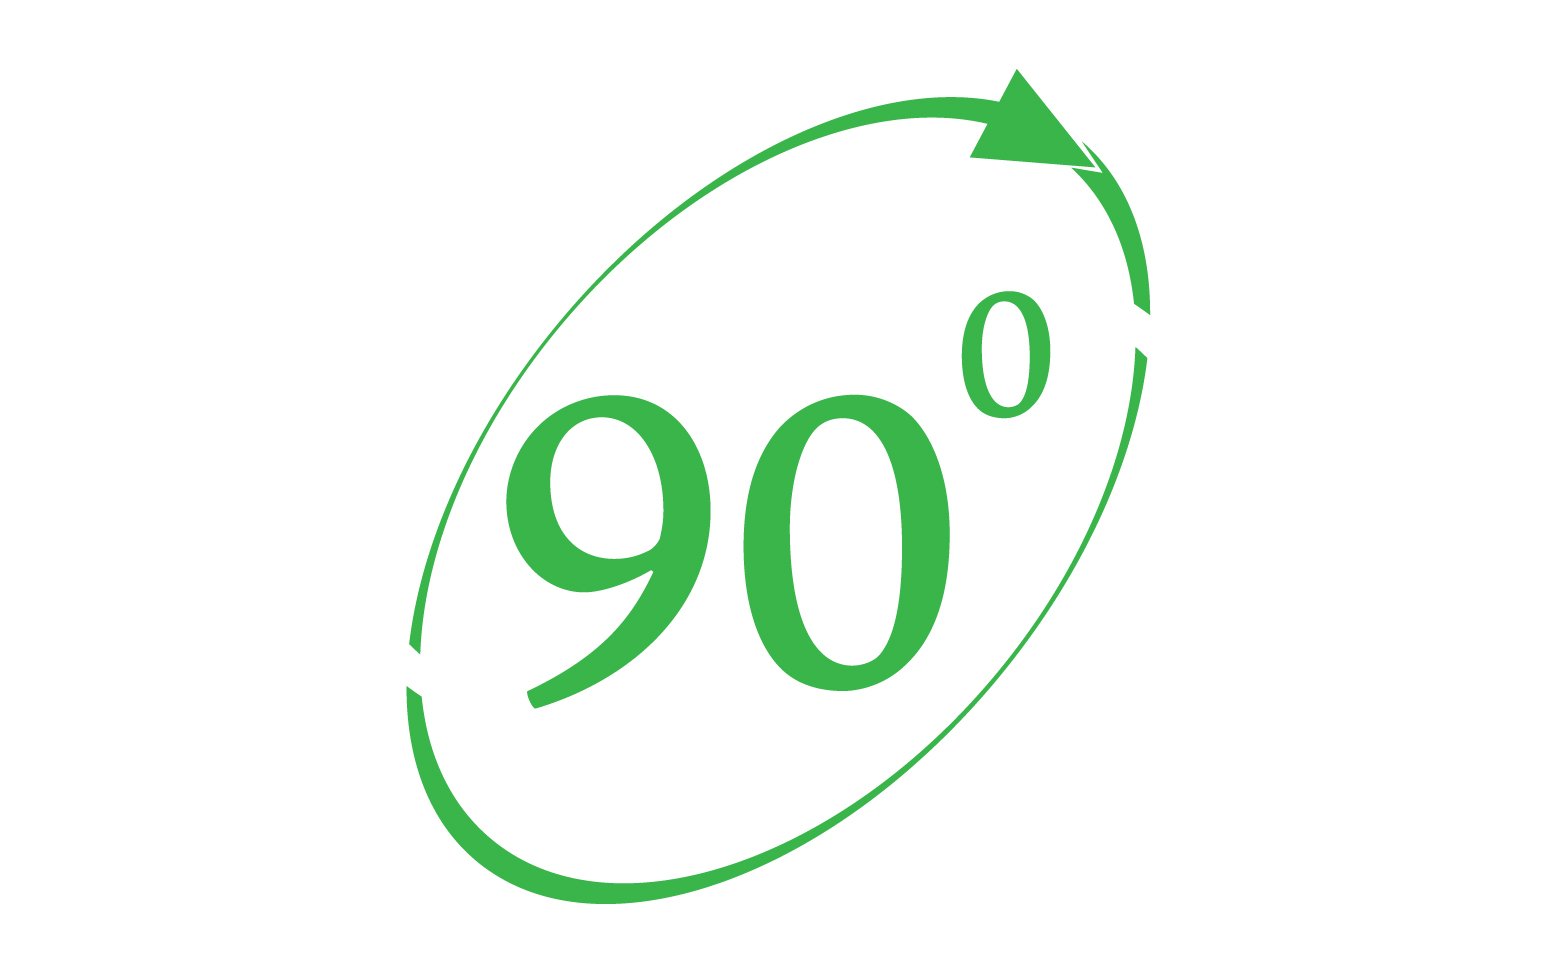 90 degree angle rotation icon symbol logo v18